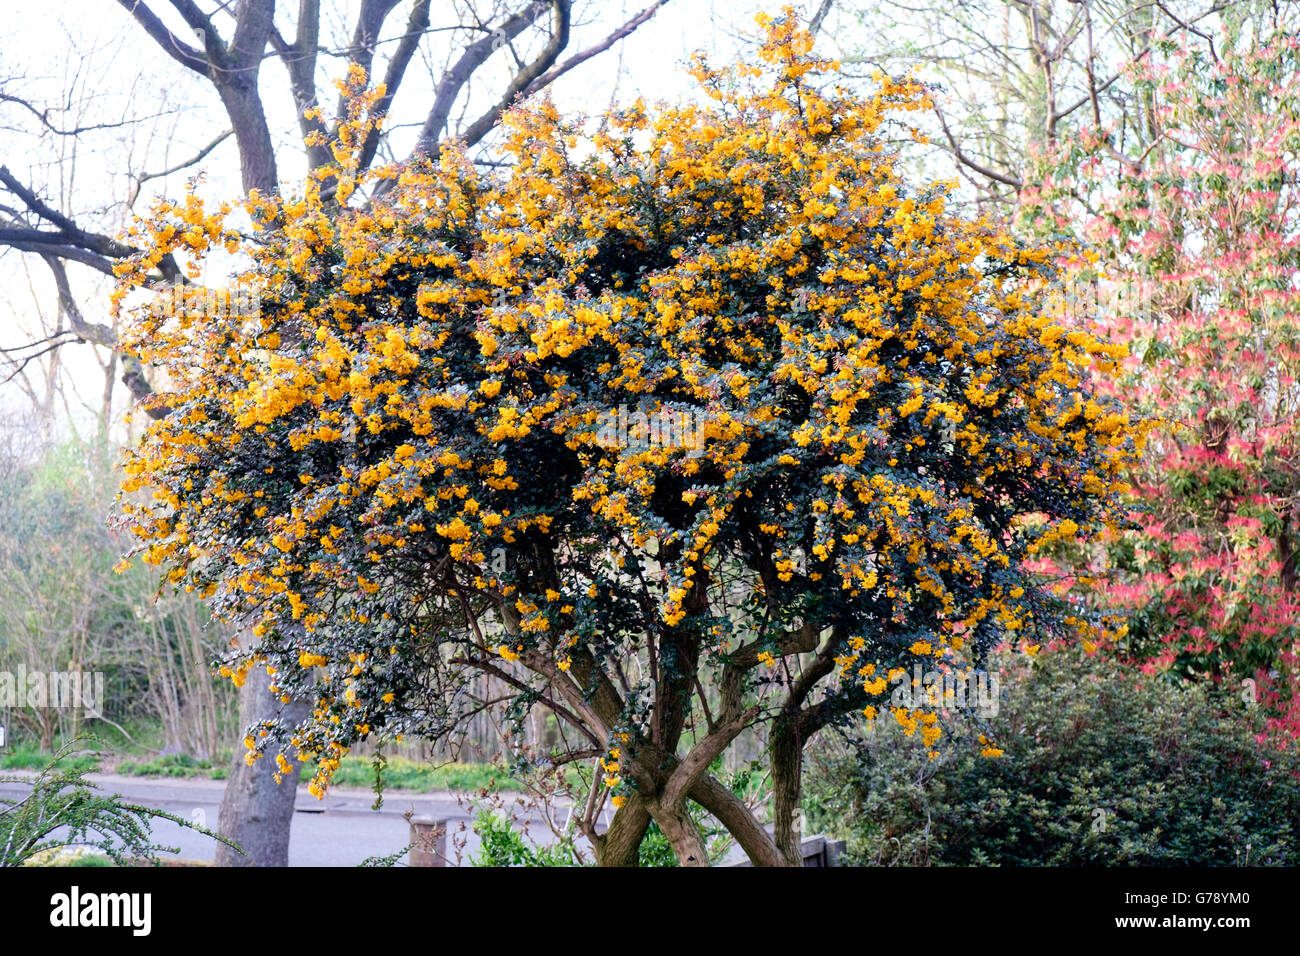 Orange Pyracantha (firethorn) tree in flower in garden in spring, Stock Photo